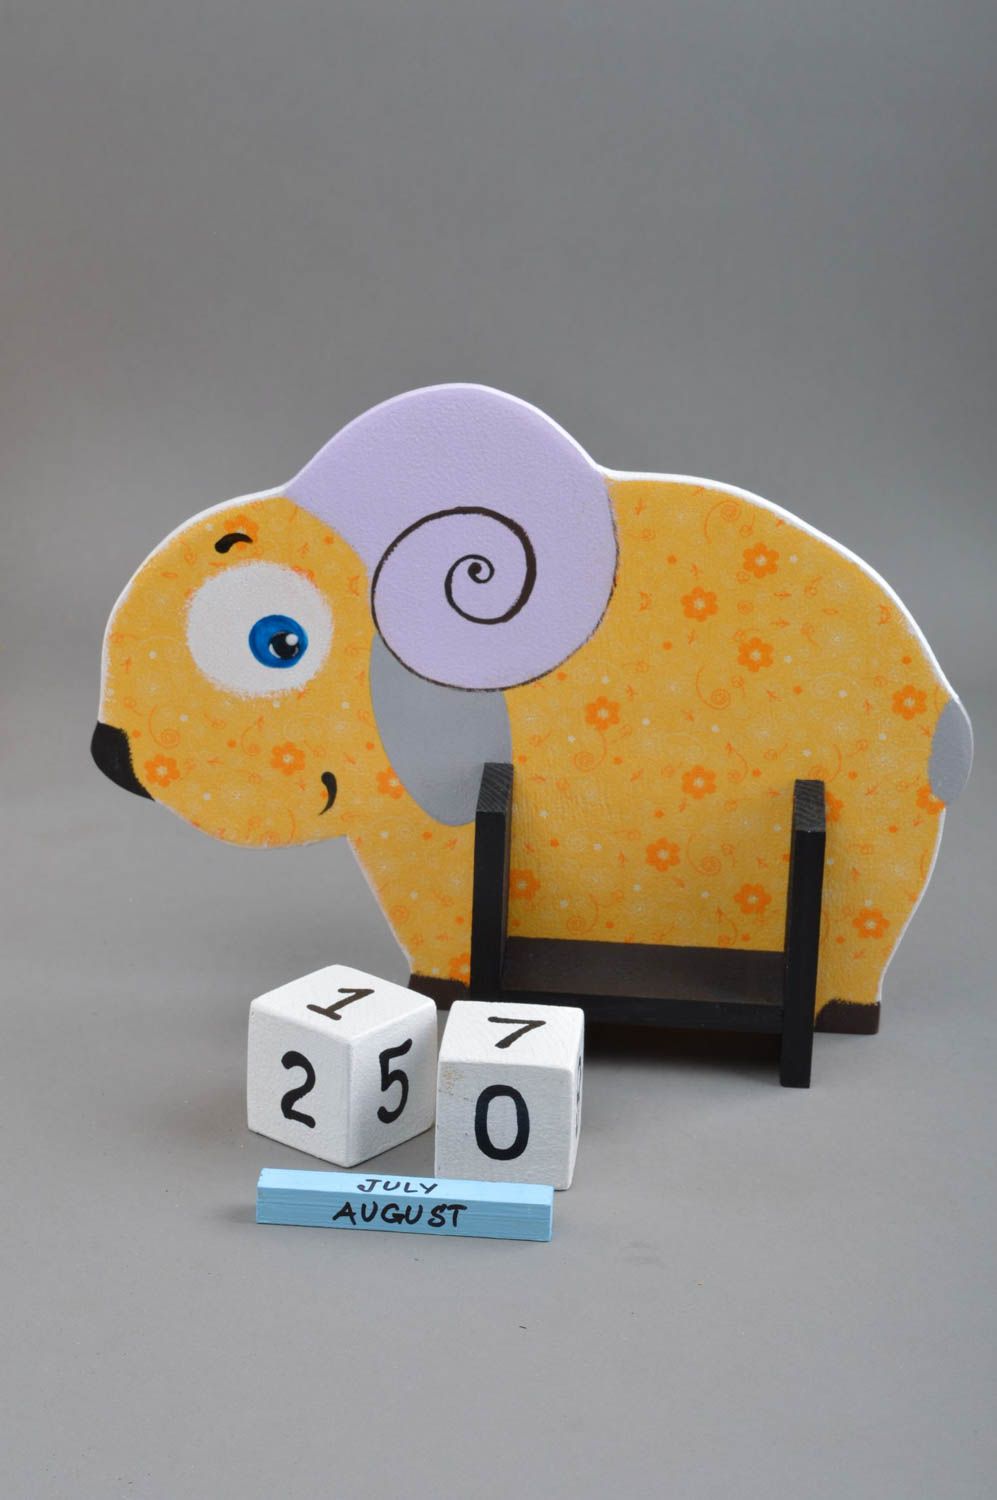 Календарь в виде овечки небольшой желтый небольшого размера для детей хэнд мейд фото 5